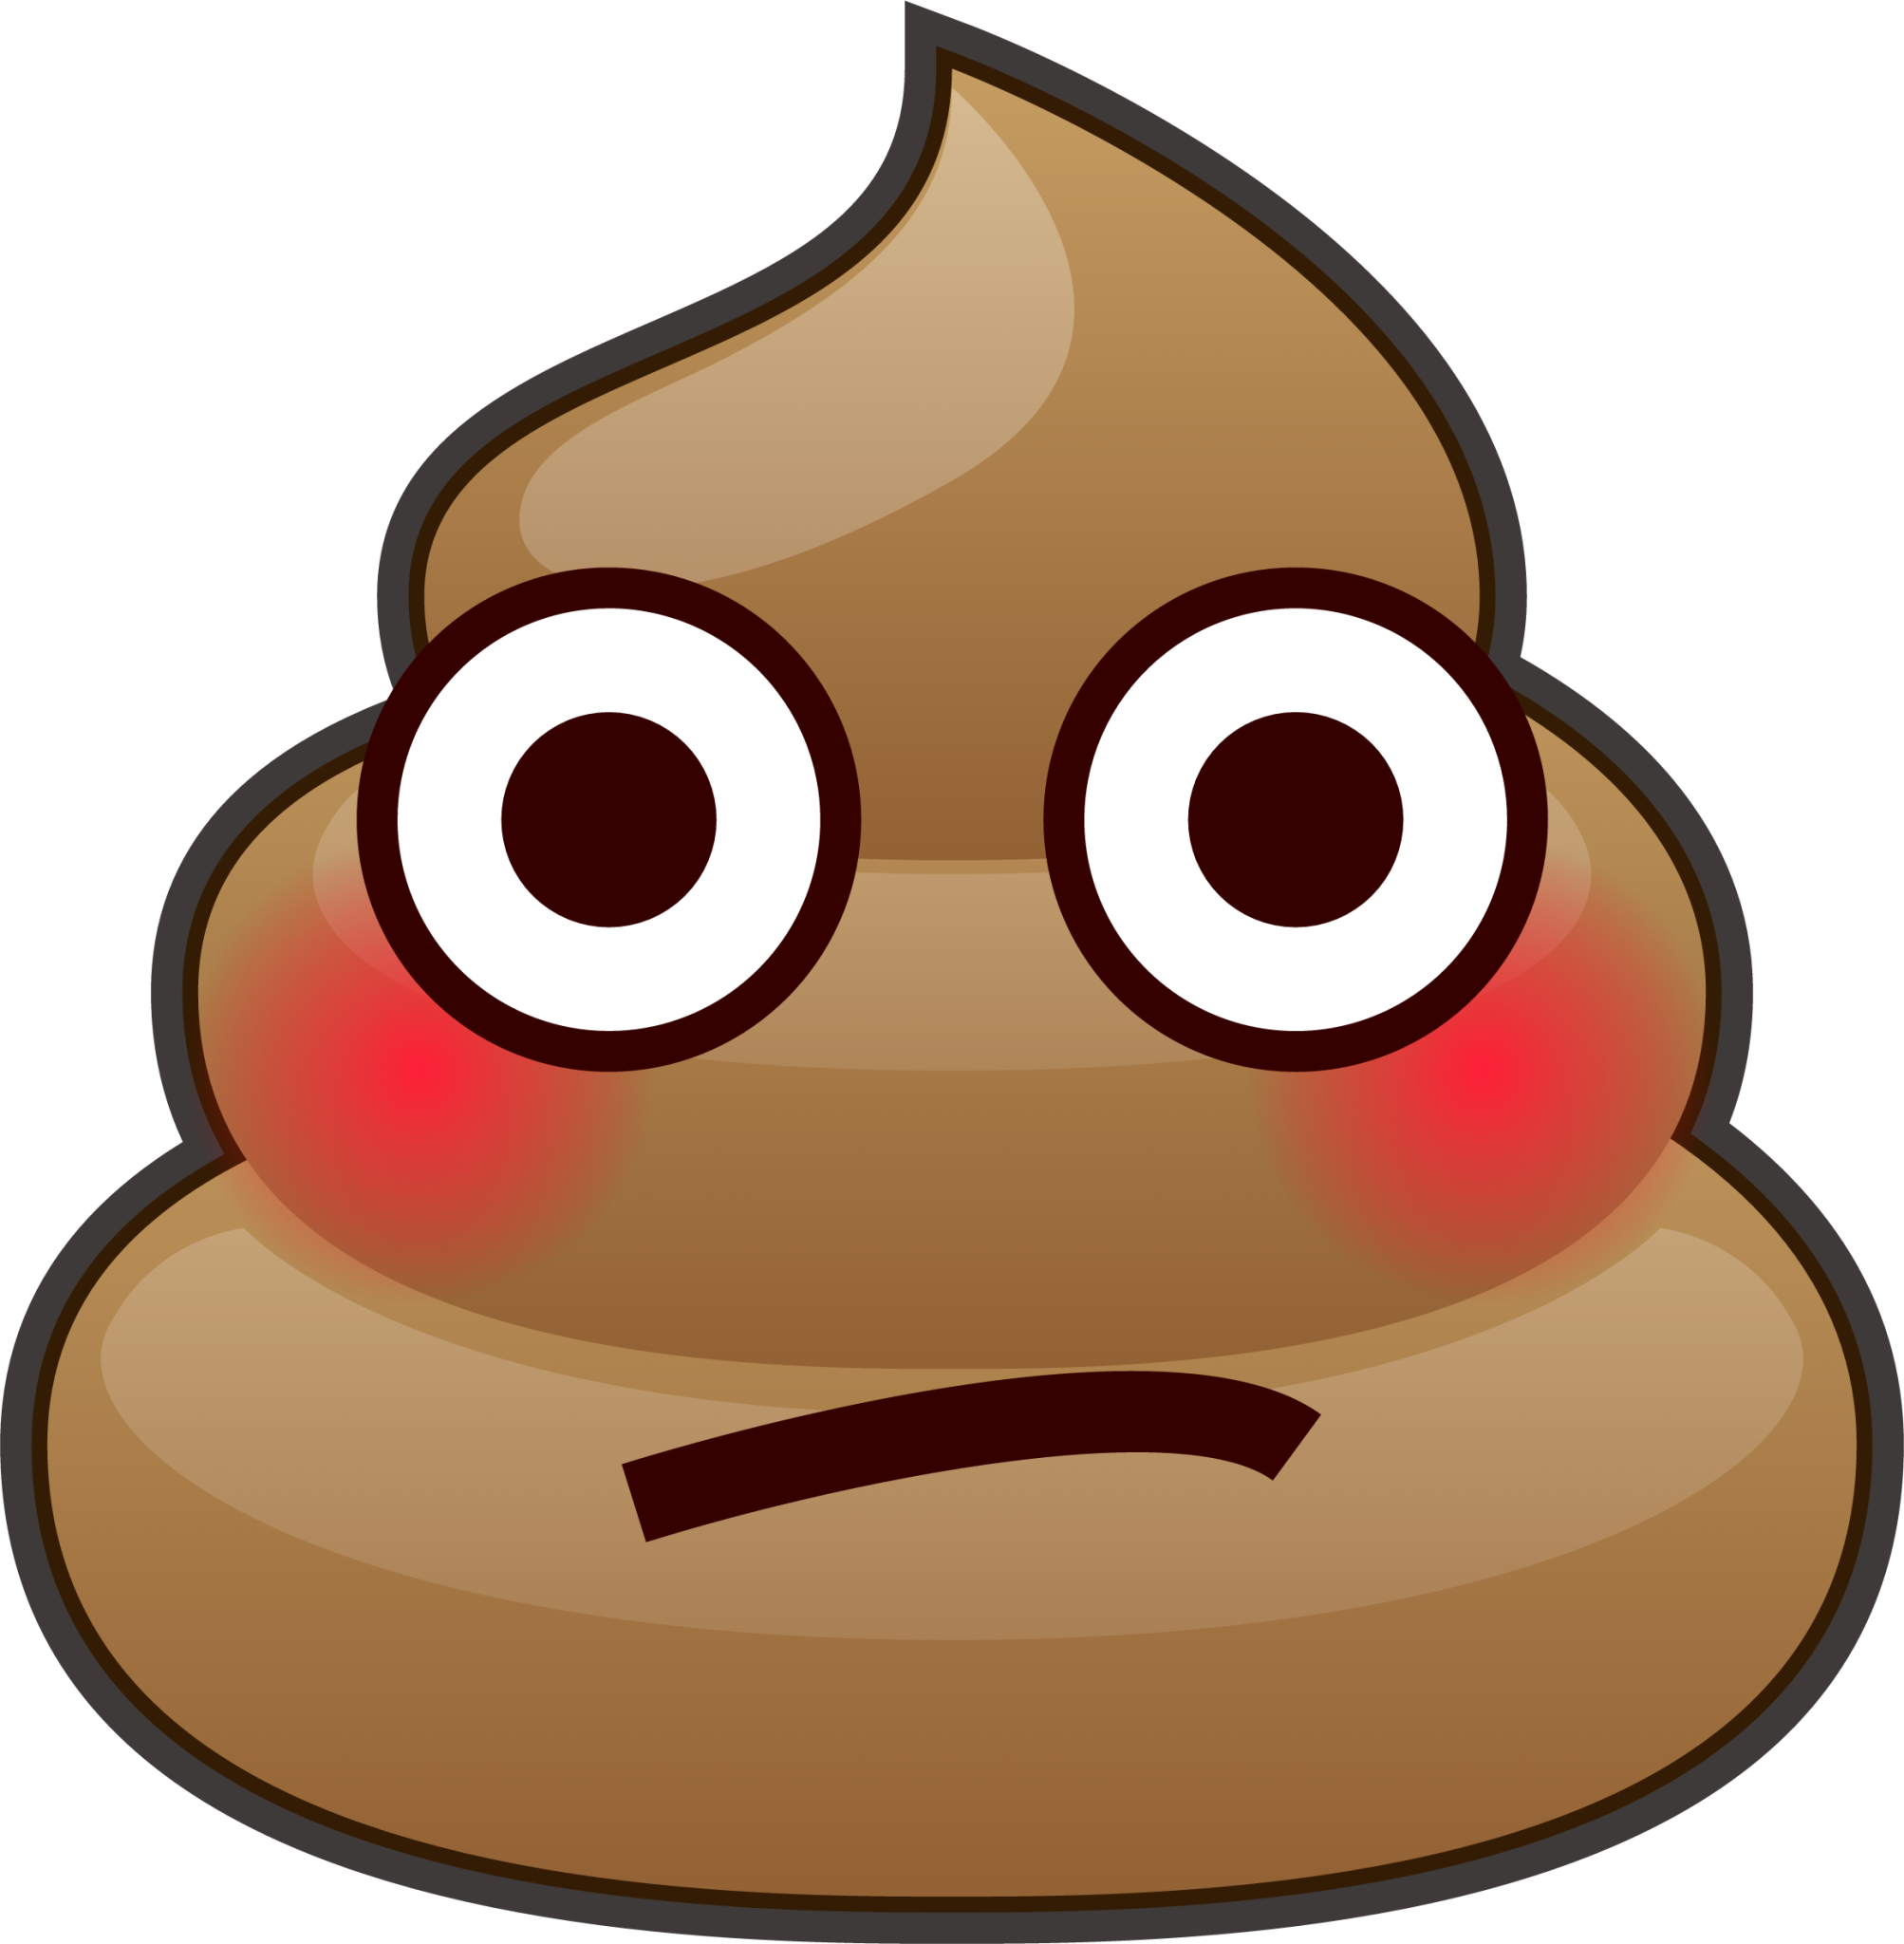 flushed (poop) emoji